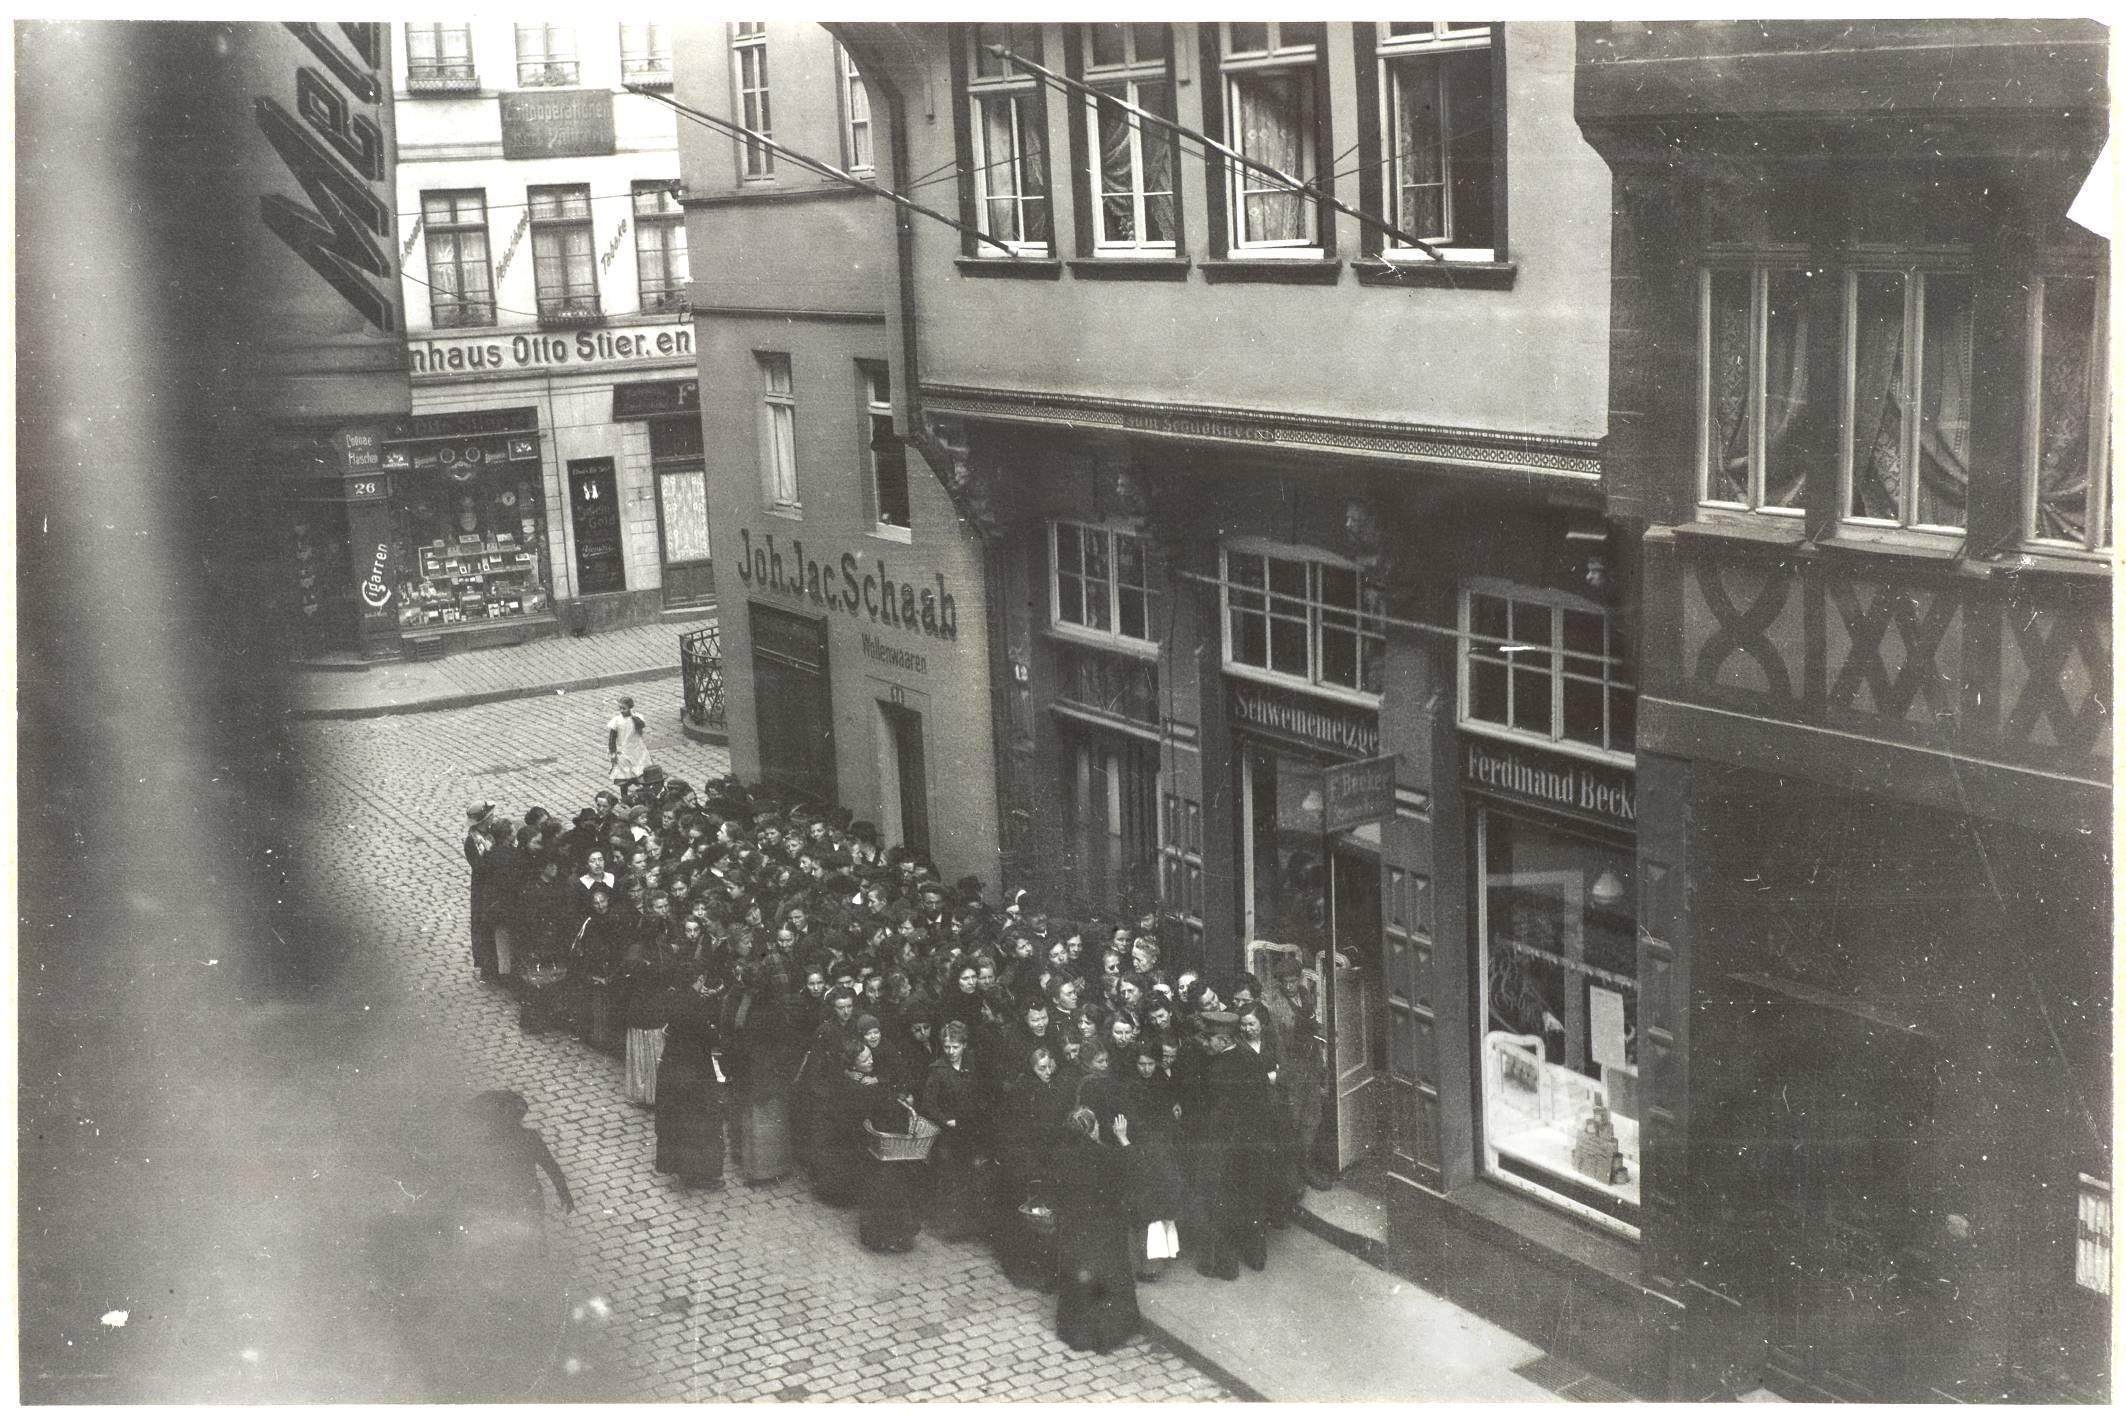 Das historische Foto zeigt eine Personengruppe vor einem Geschäft in der Frankfurter Altstadt um 1916.